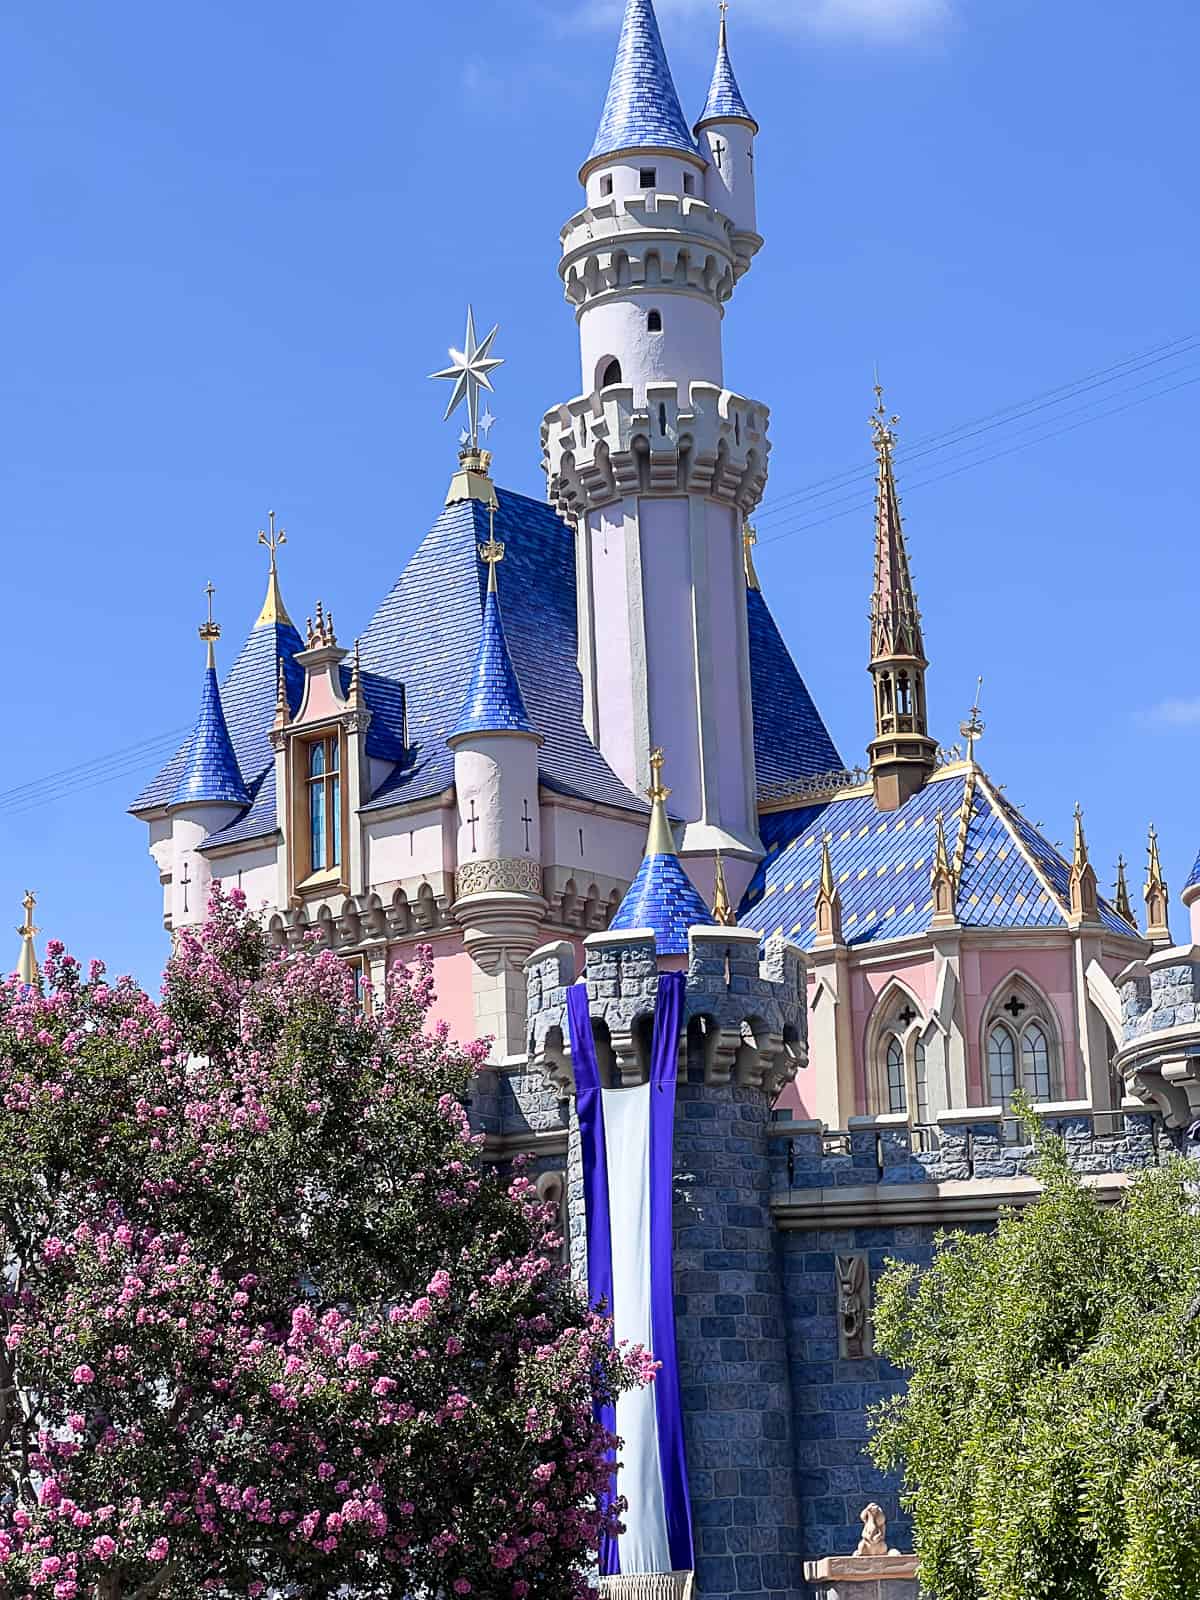 Castle at Disneyland Park Anaheim